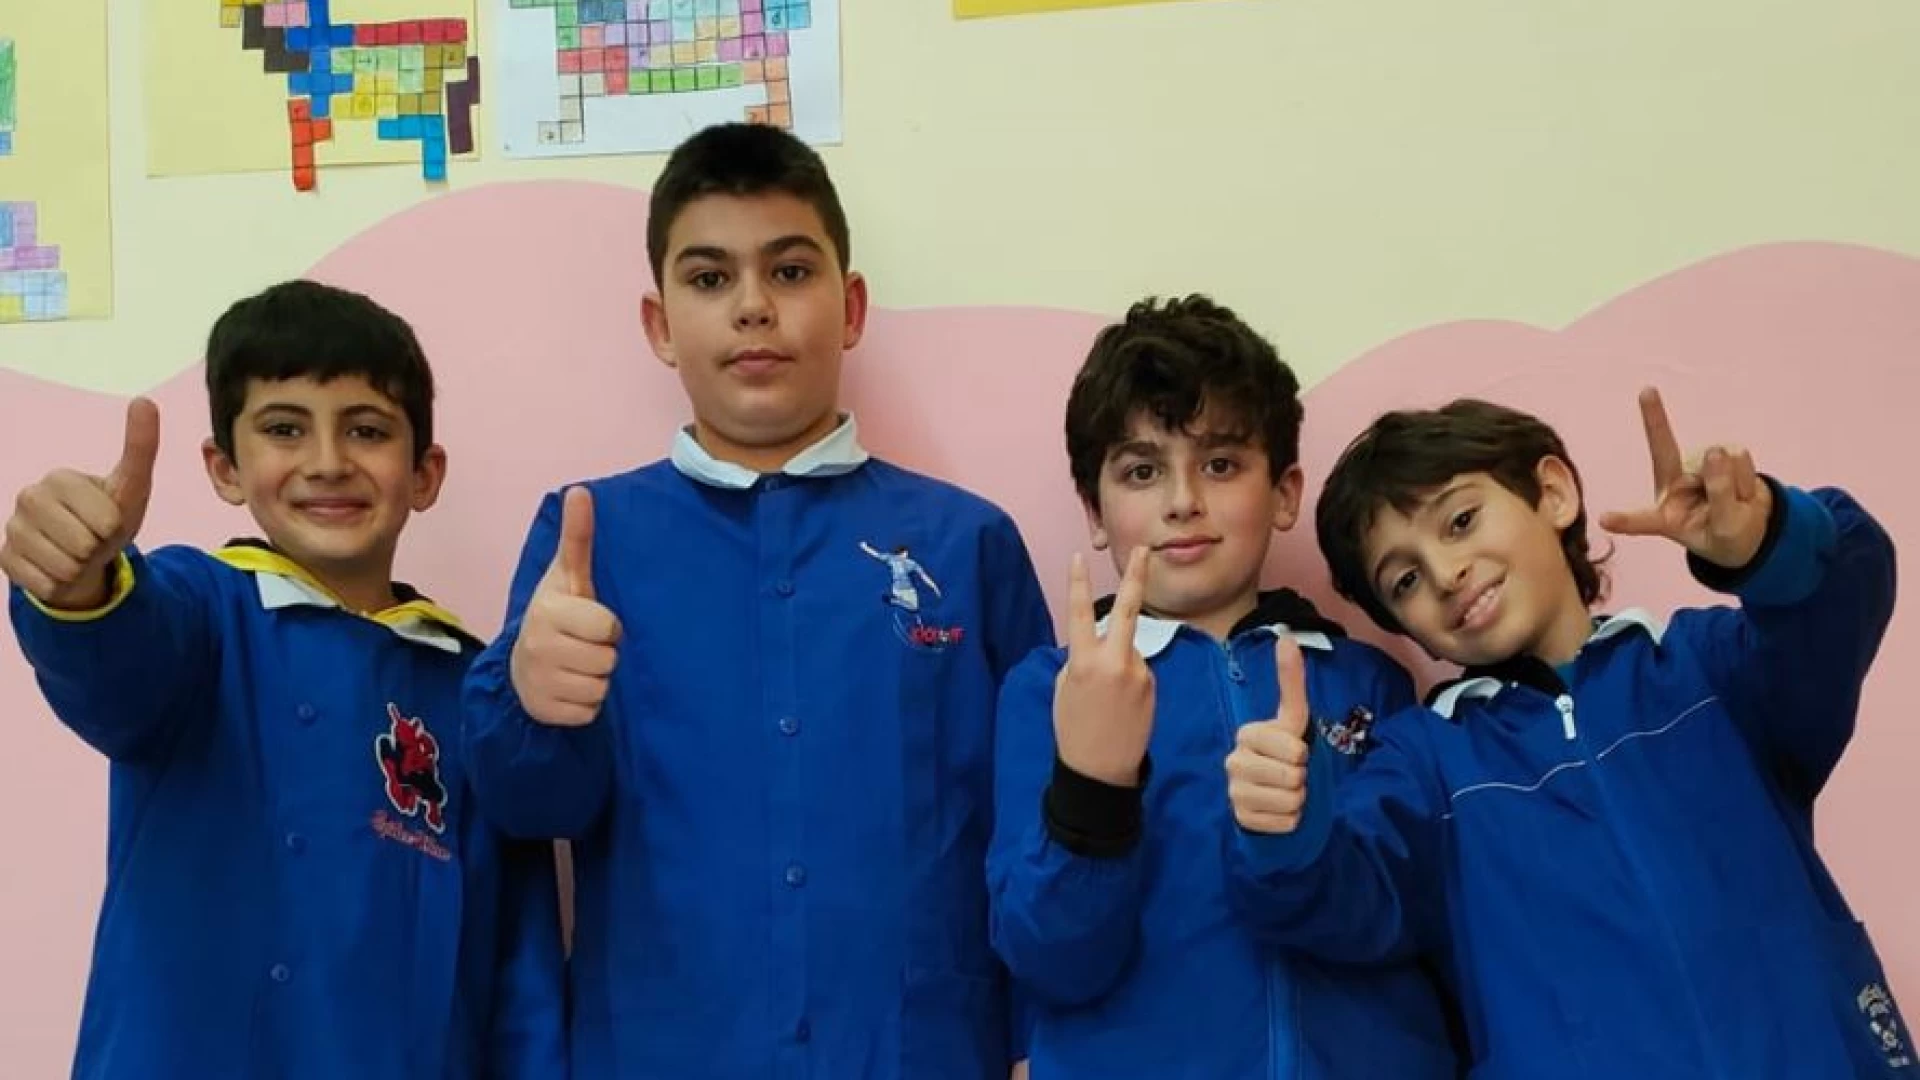 Olimpiadi di problem solving, ottimi risultati per gli alunni dell’Istituto Comprensivo Colozza.